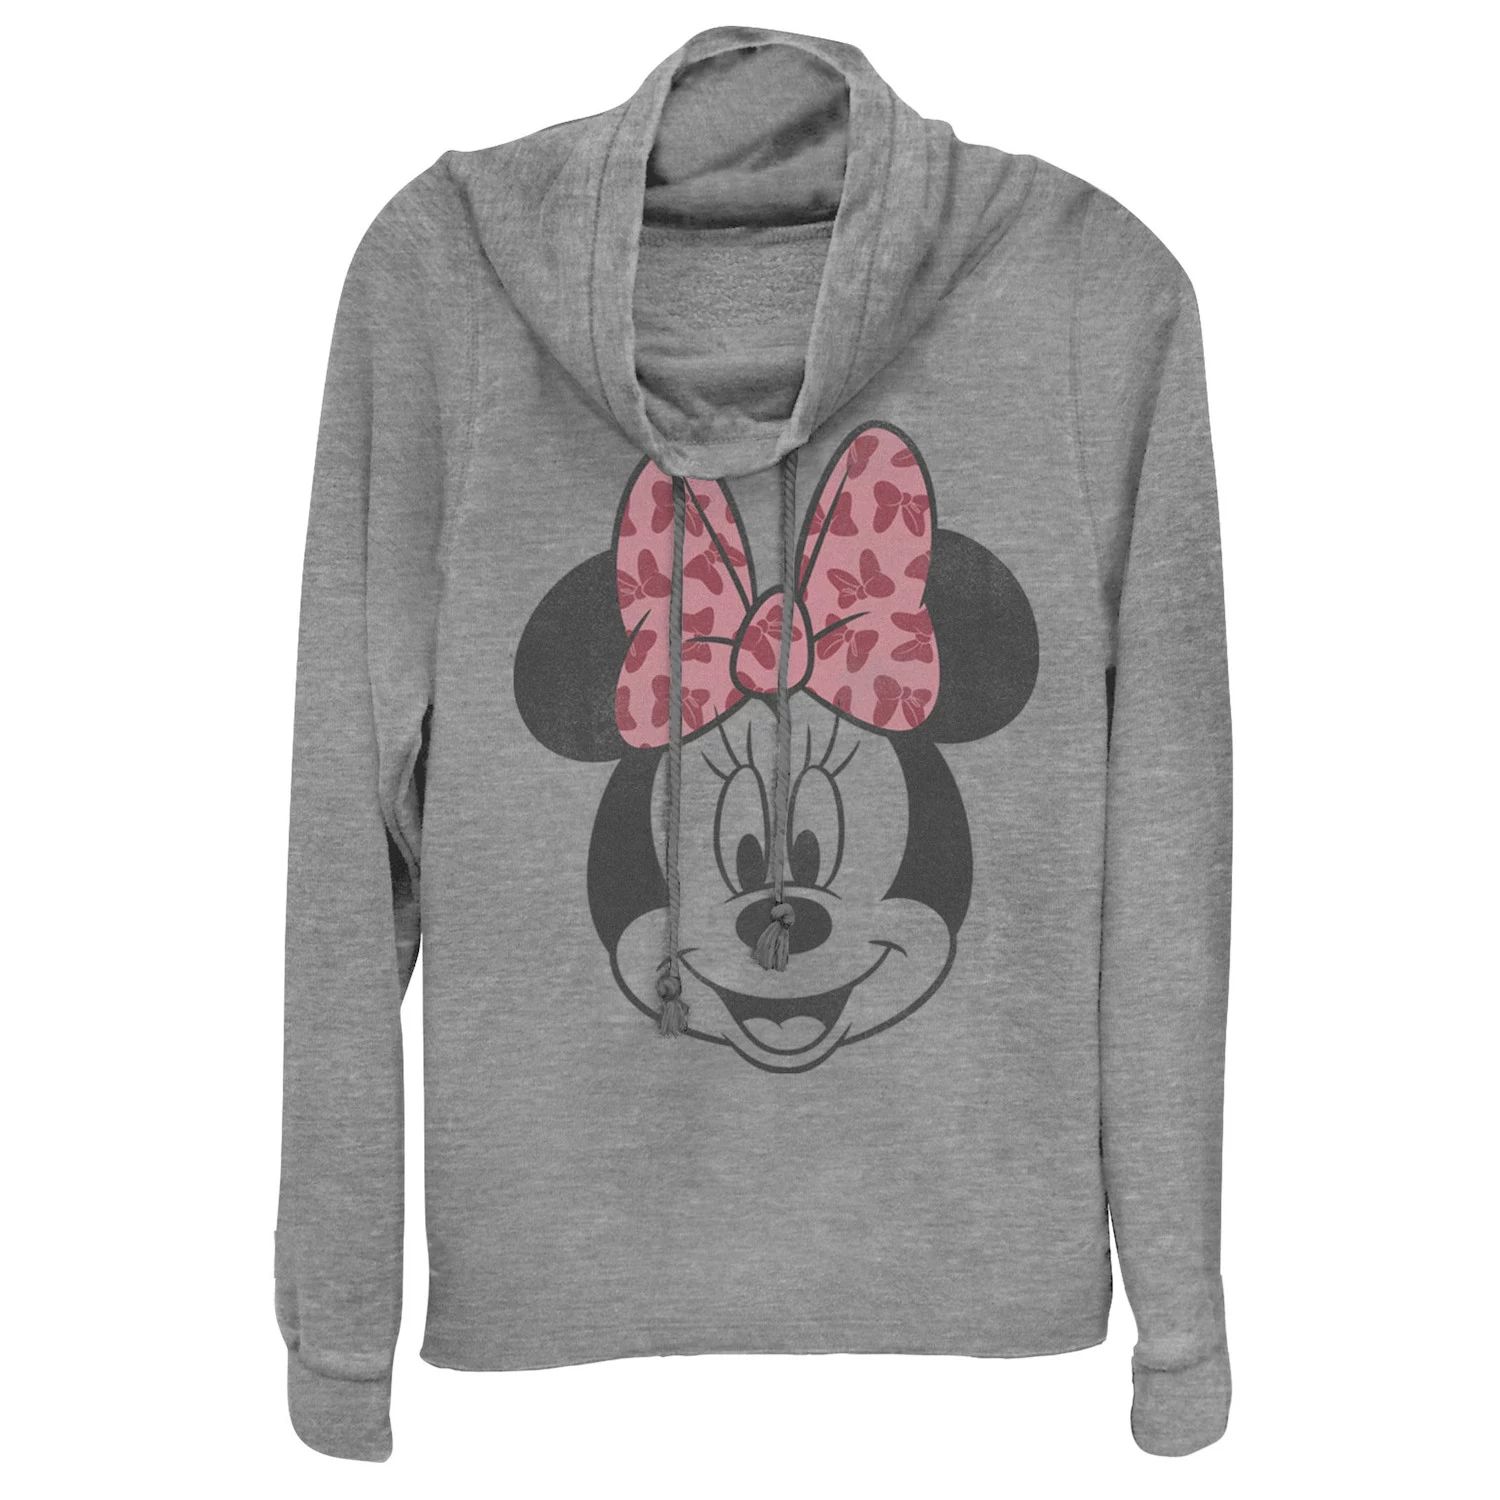 Пуловер с хомутом и воротником-хомутом Disney's Disney's Minnie Mouse Licensed Character